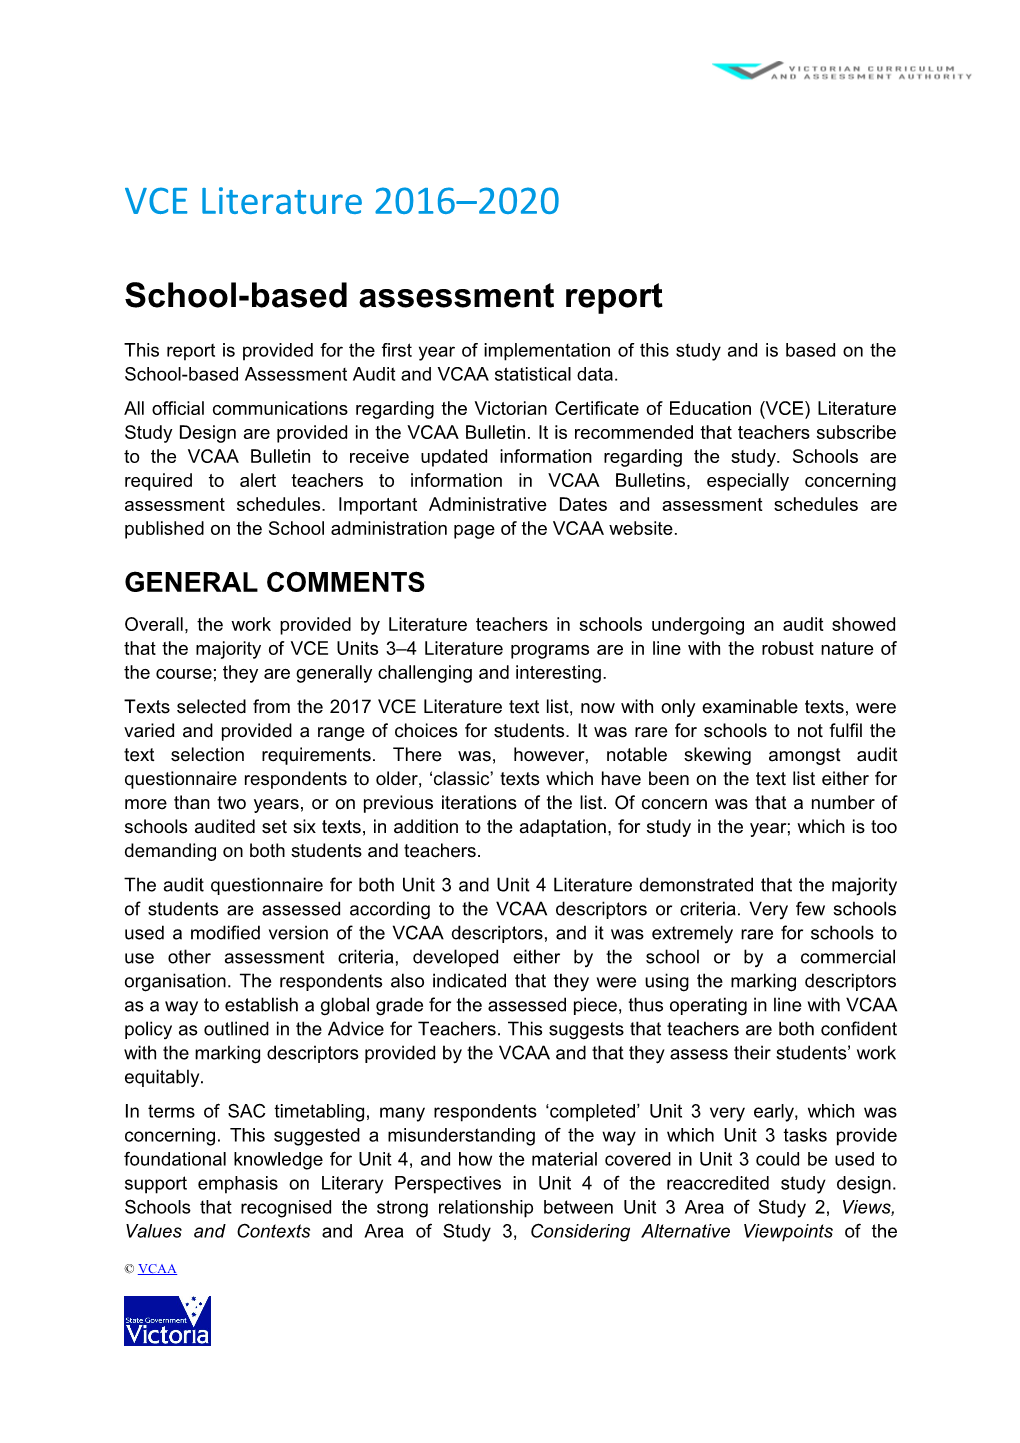 School-Based Assessment Report